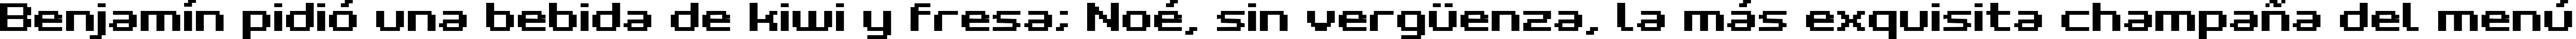 Пример написания шрифтом Grixel Kyrou 7 Wide Bold текста на испанском